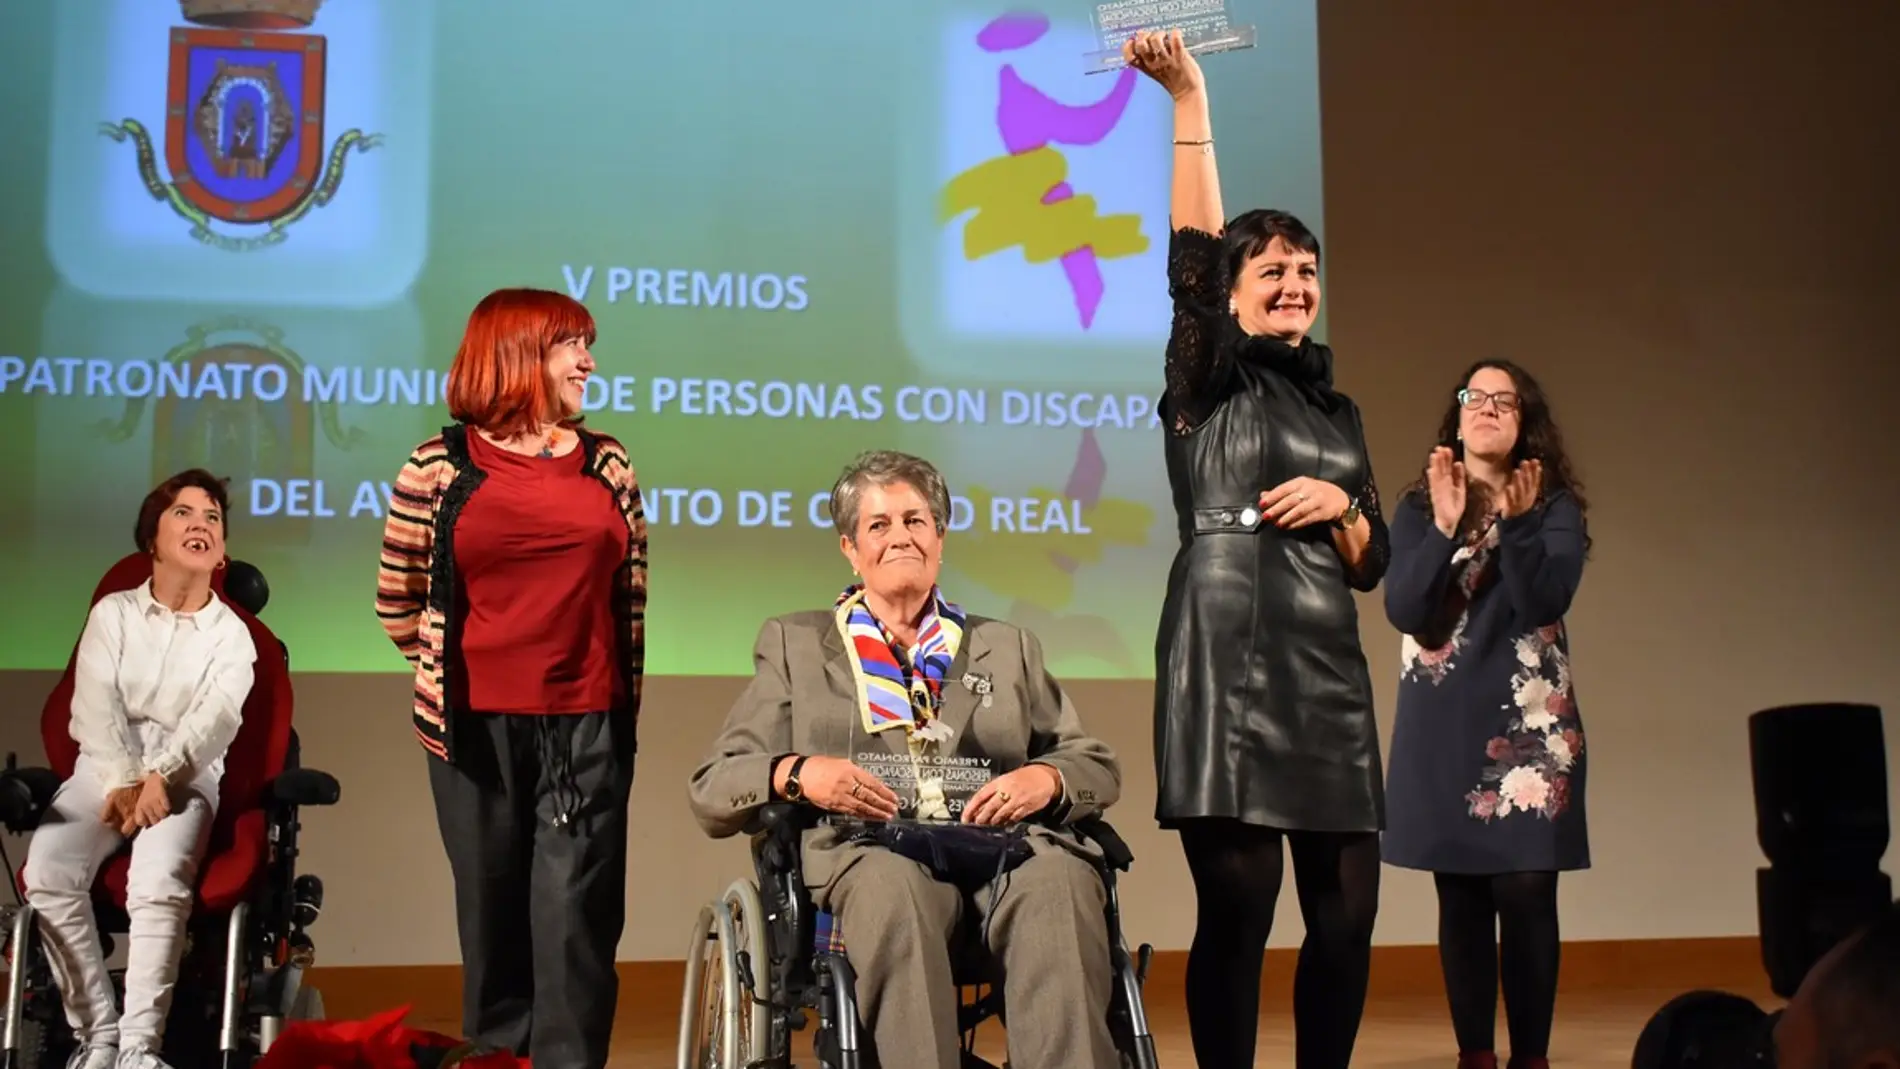 Nieves Adán recogió el premio del Patronato Municipal de Personas con Discapacidad